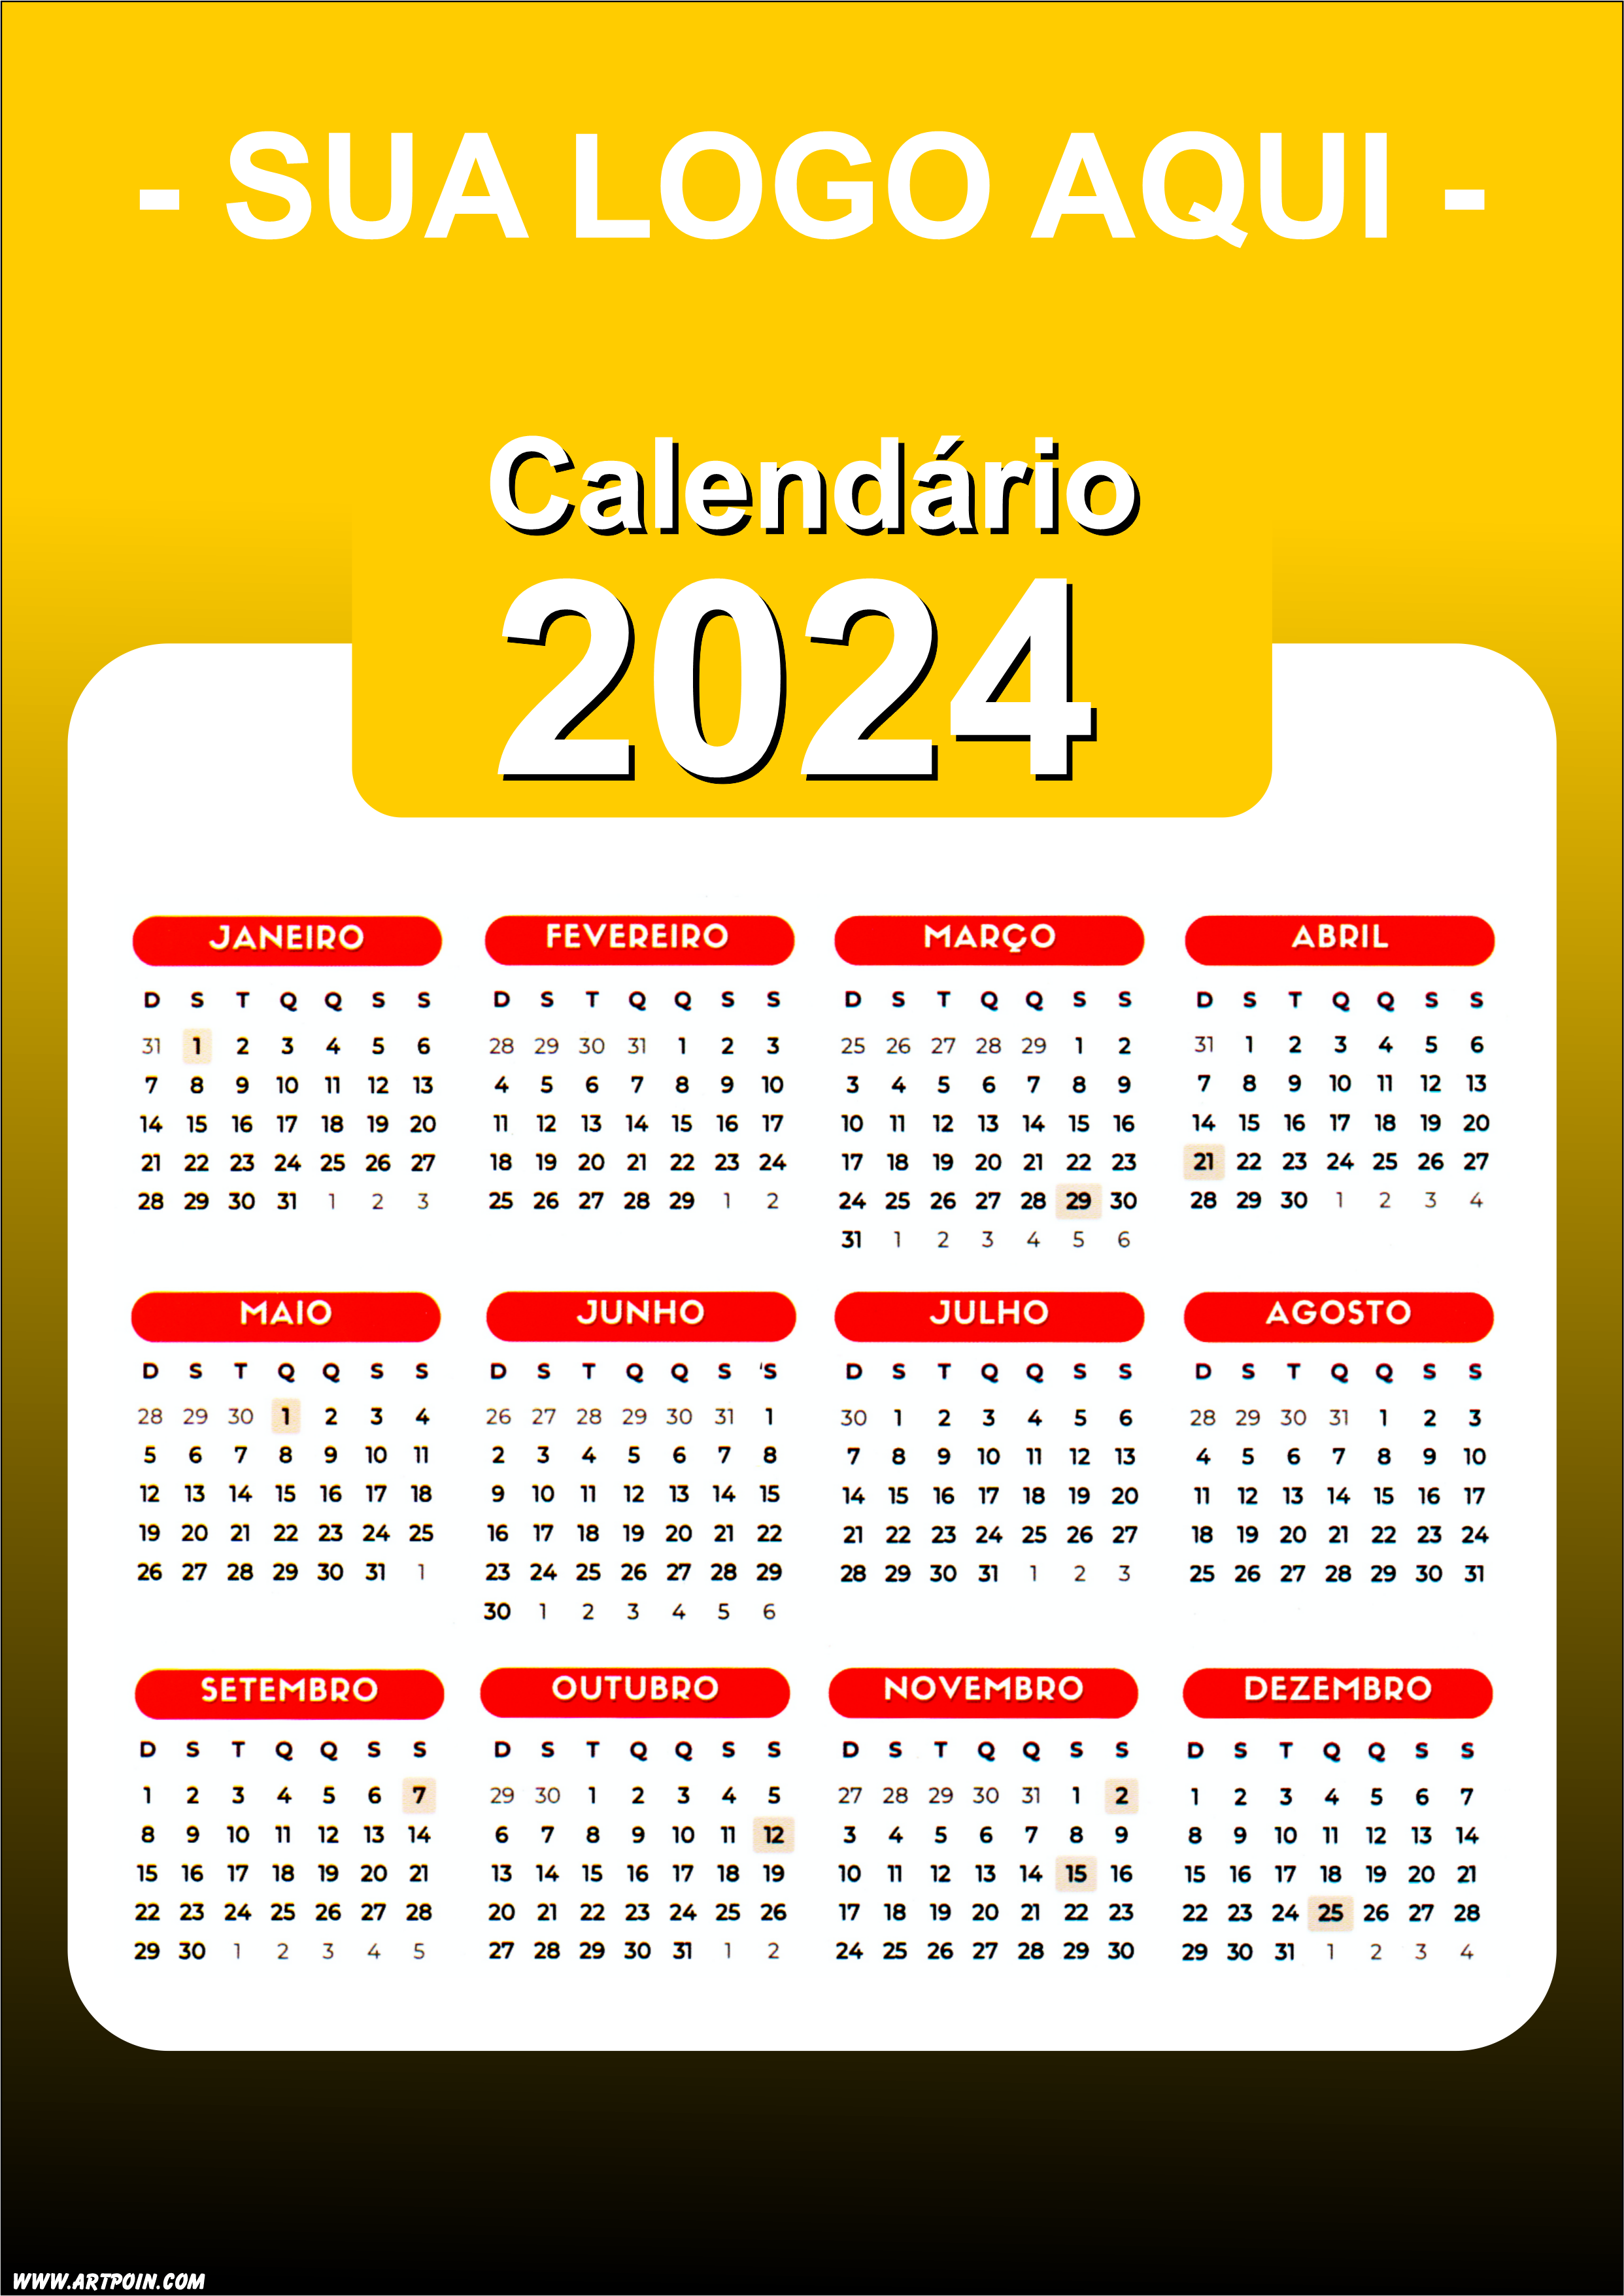 Calendário 2024 modelo amarelo para personalização com a logo da sua loja png